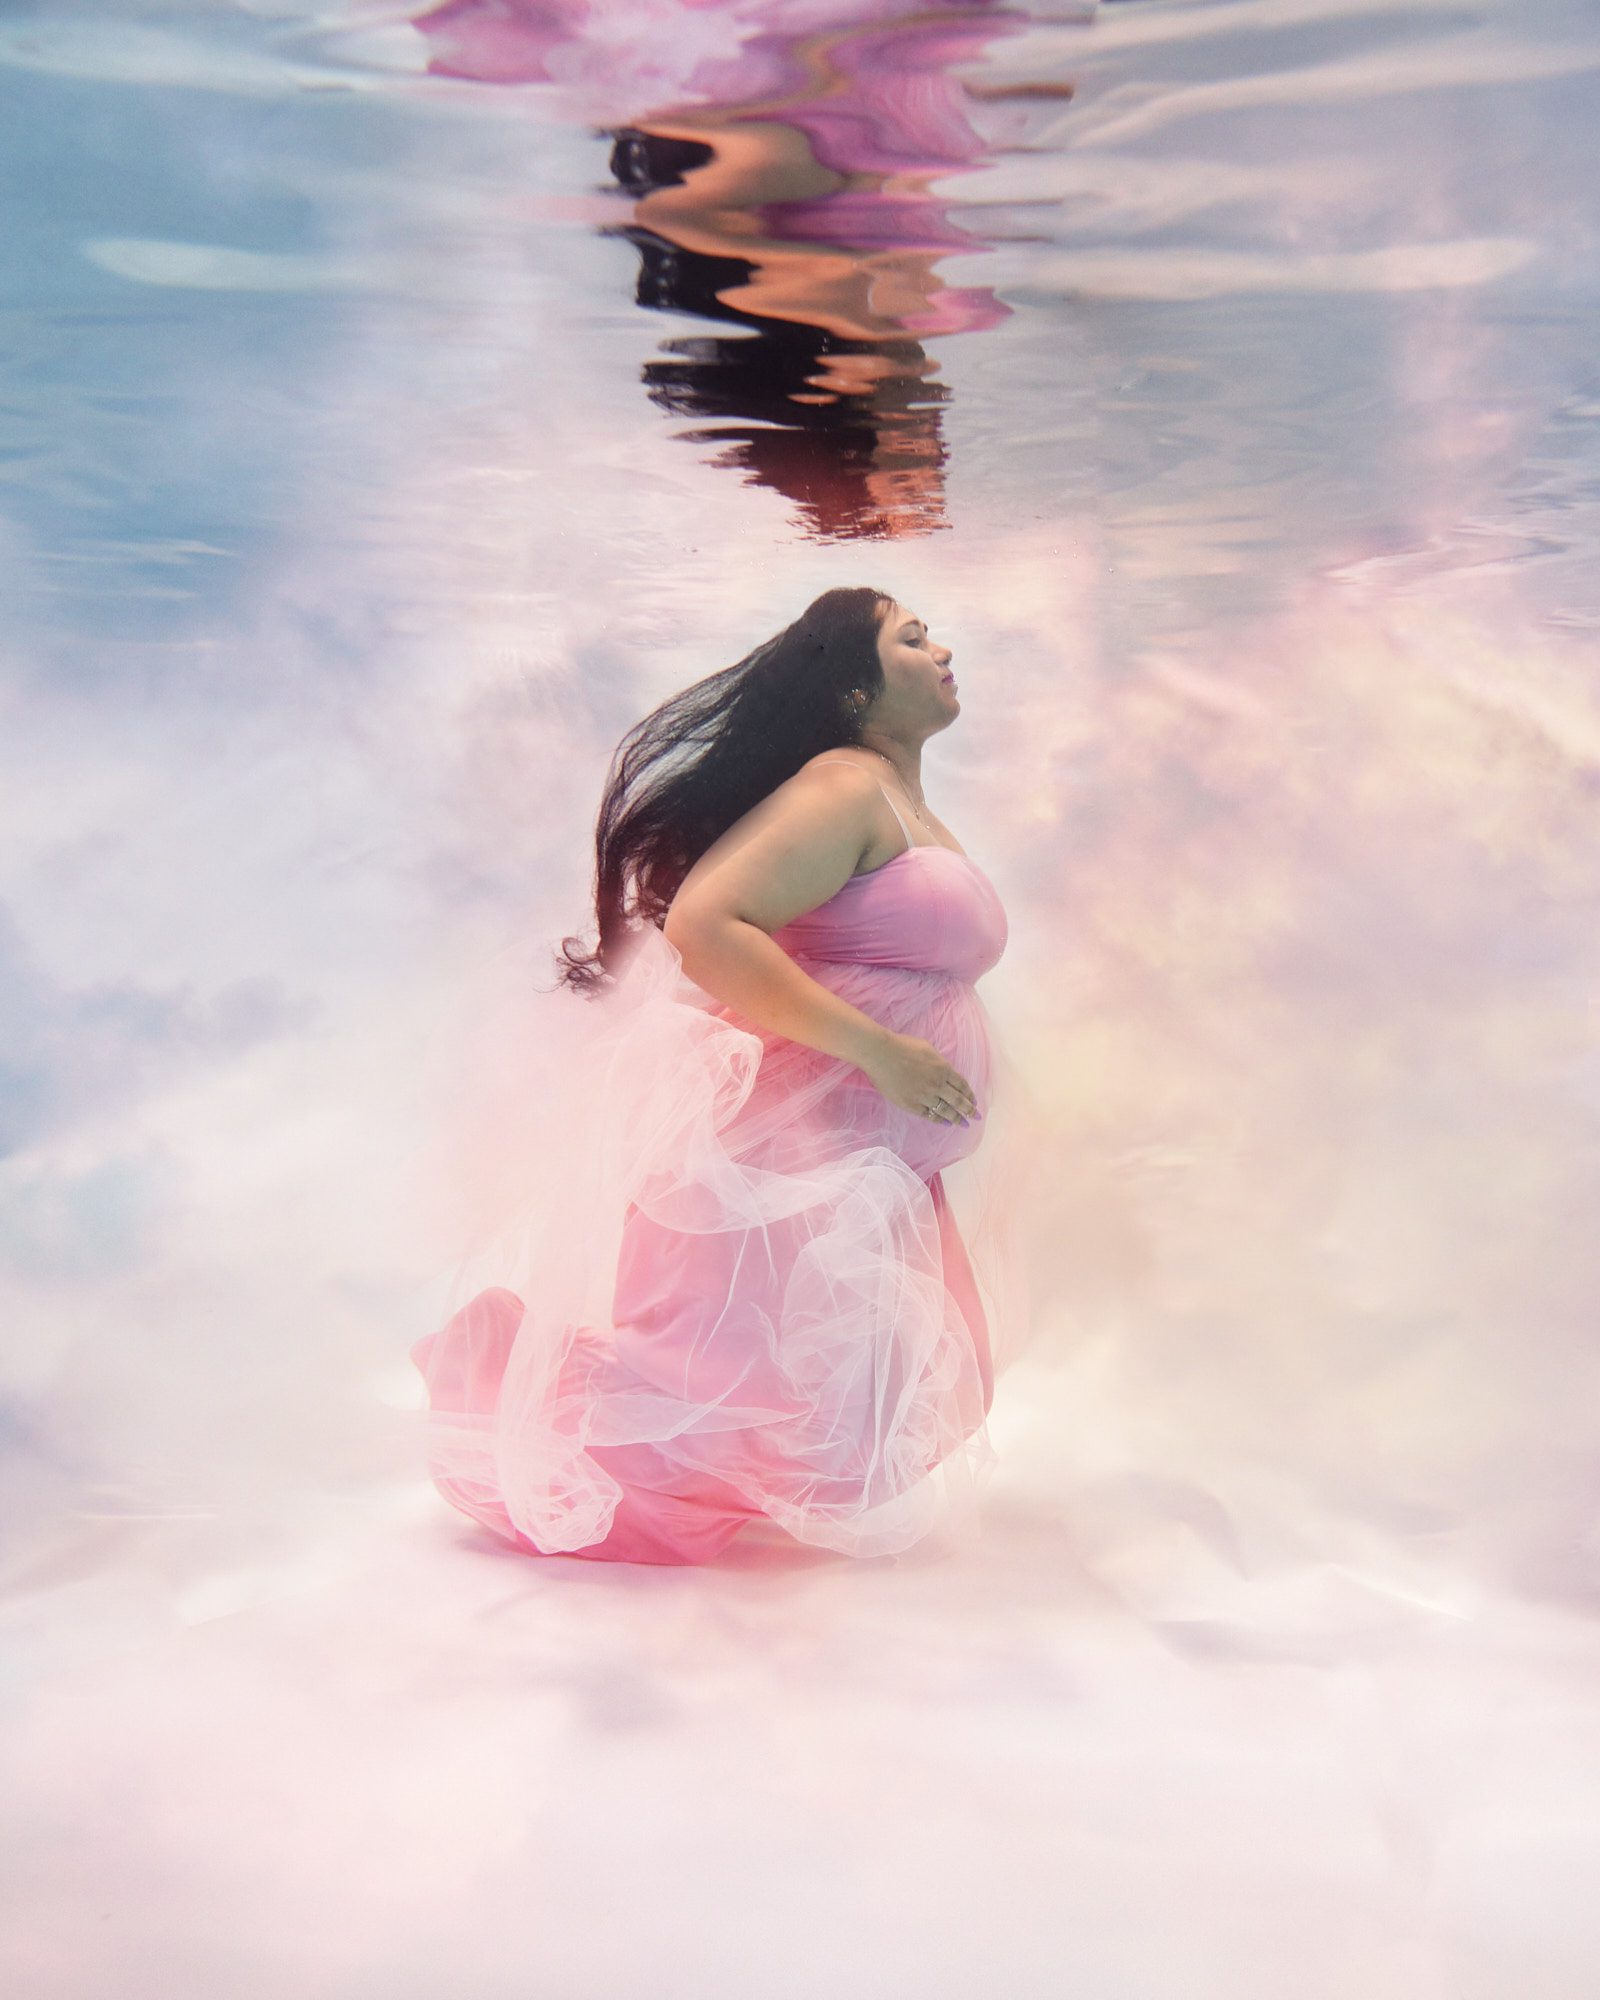 Underwater maternity shoot